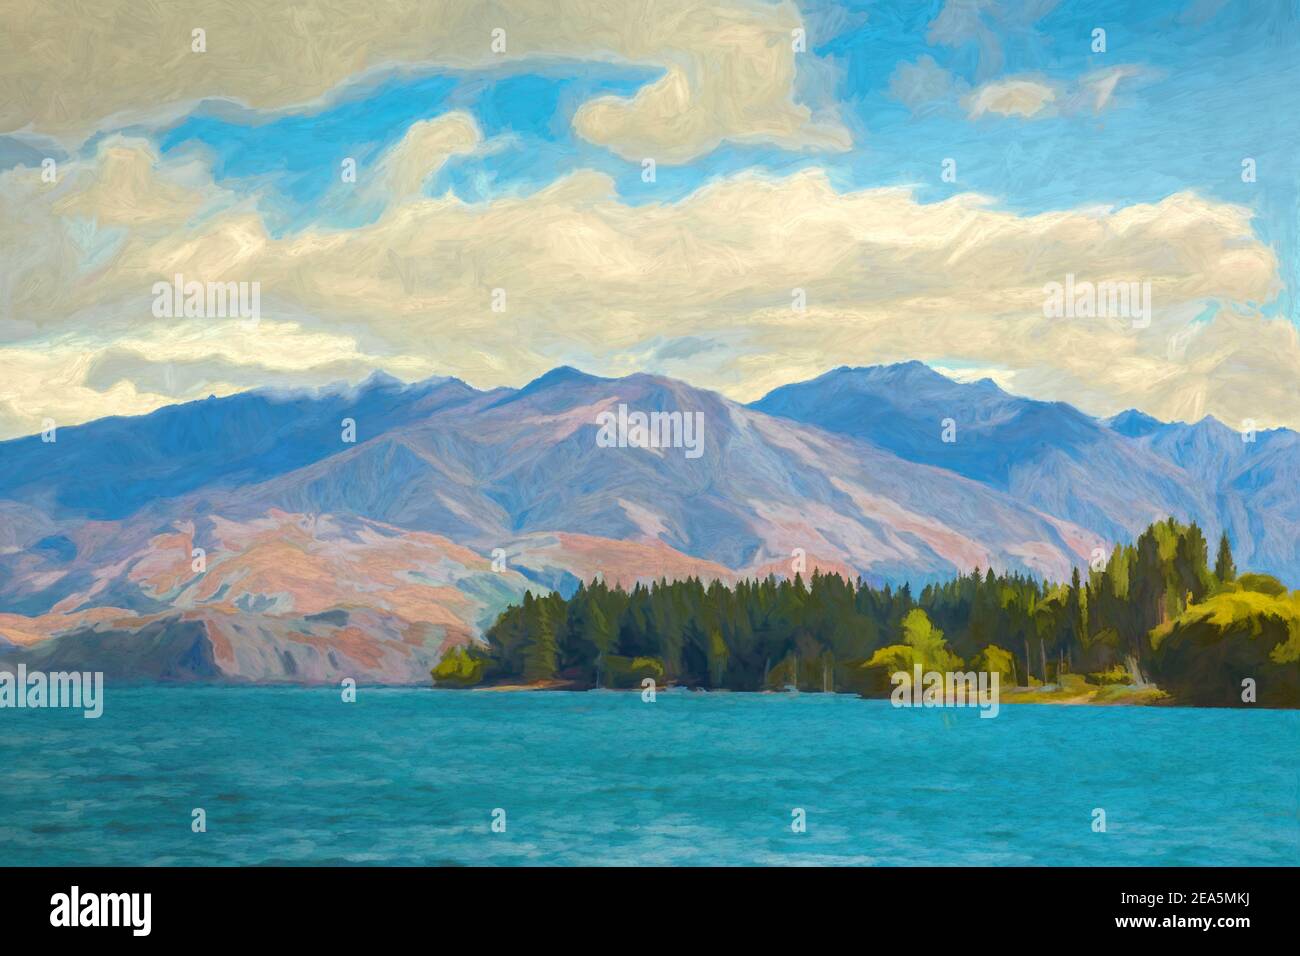 Peinture numérique des montagnes et des arbres de l'autre côté du lac Wakatipu, Nouvelle-Zélande. Banque D'Images